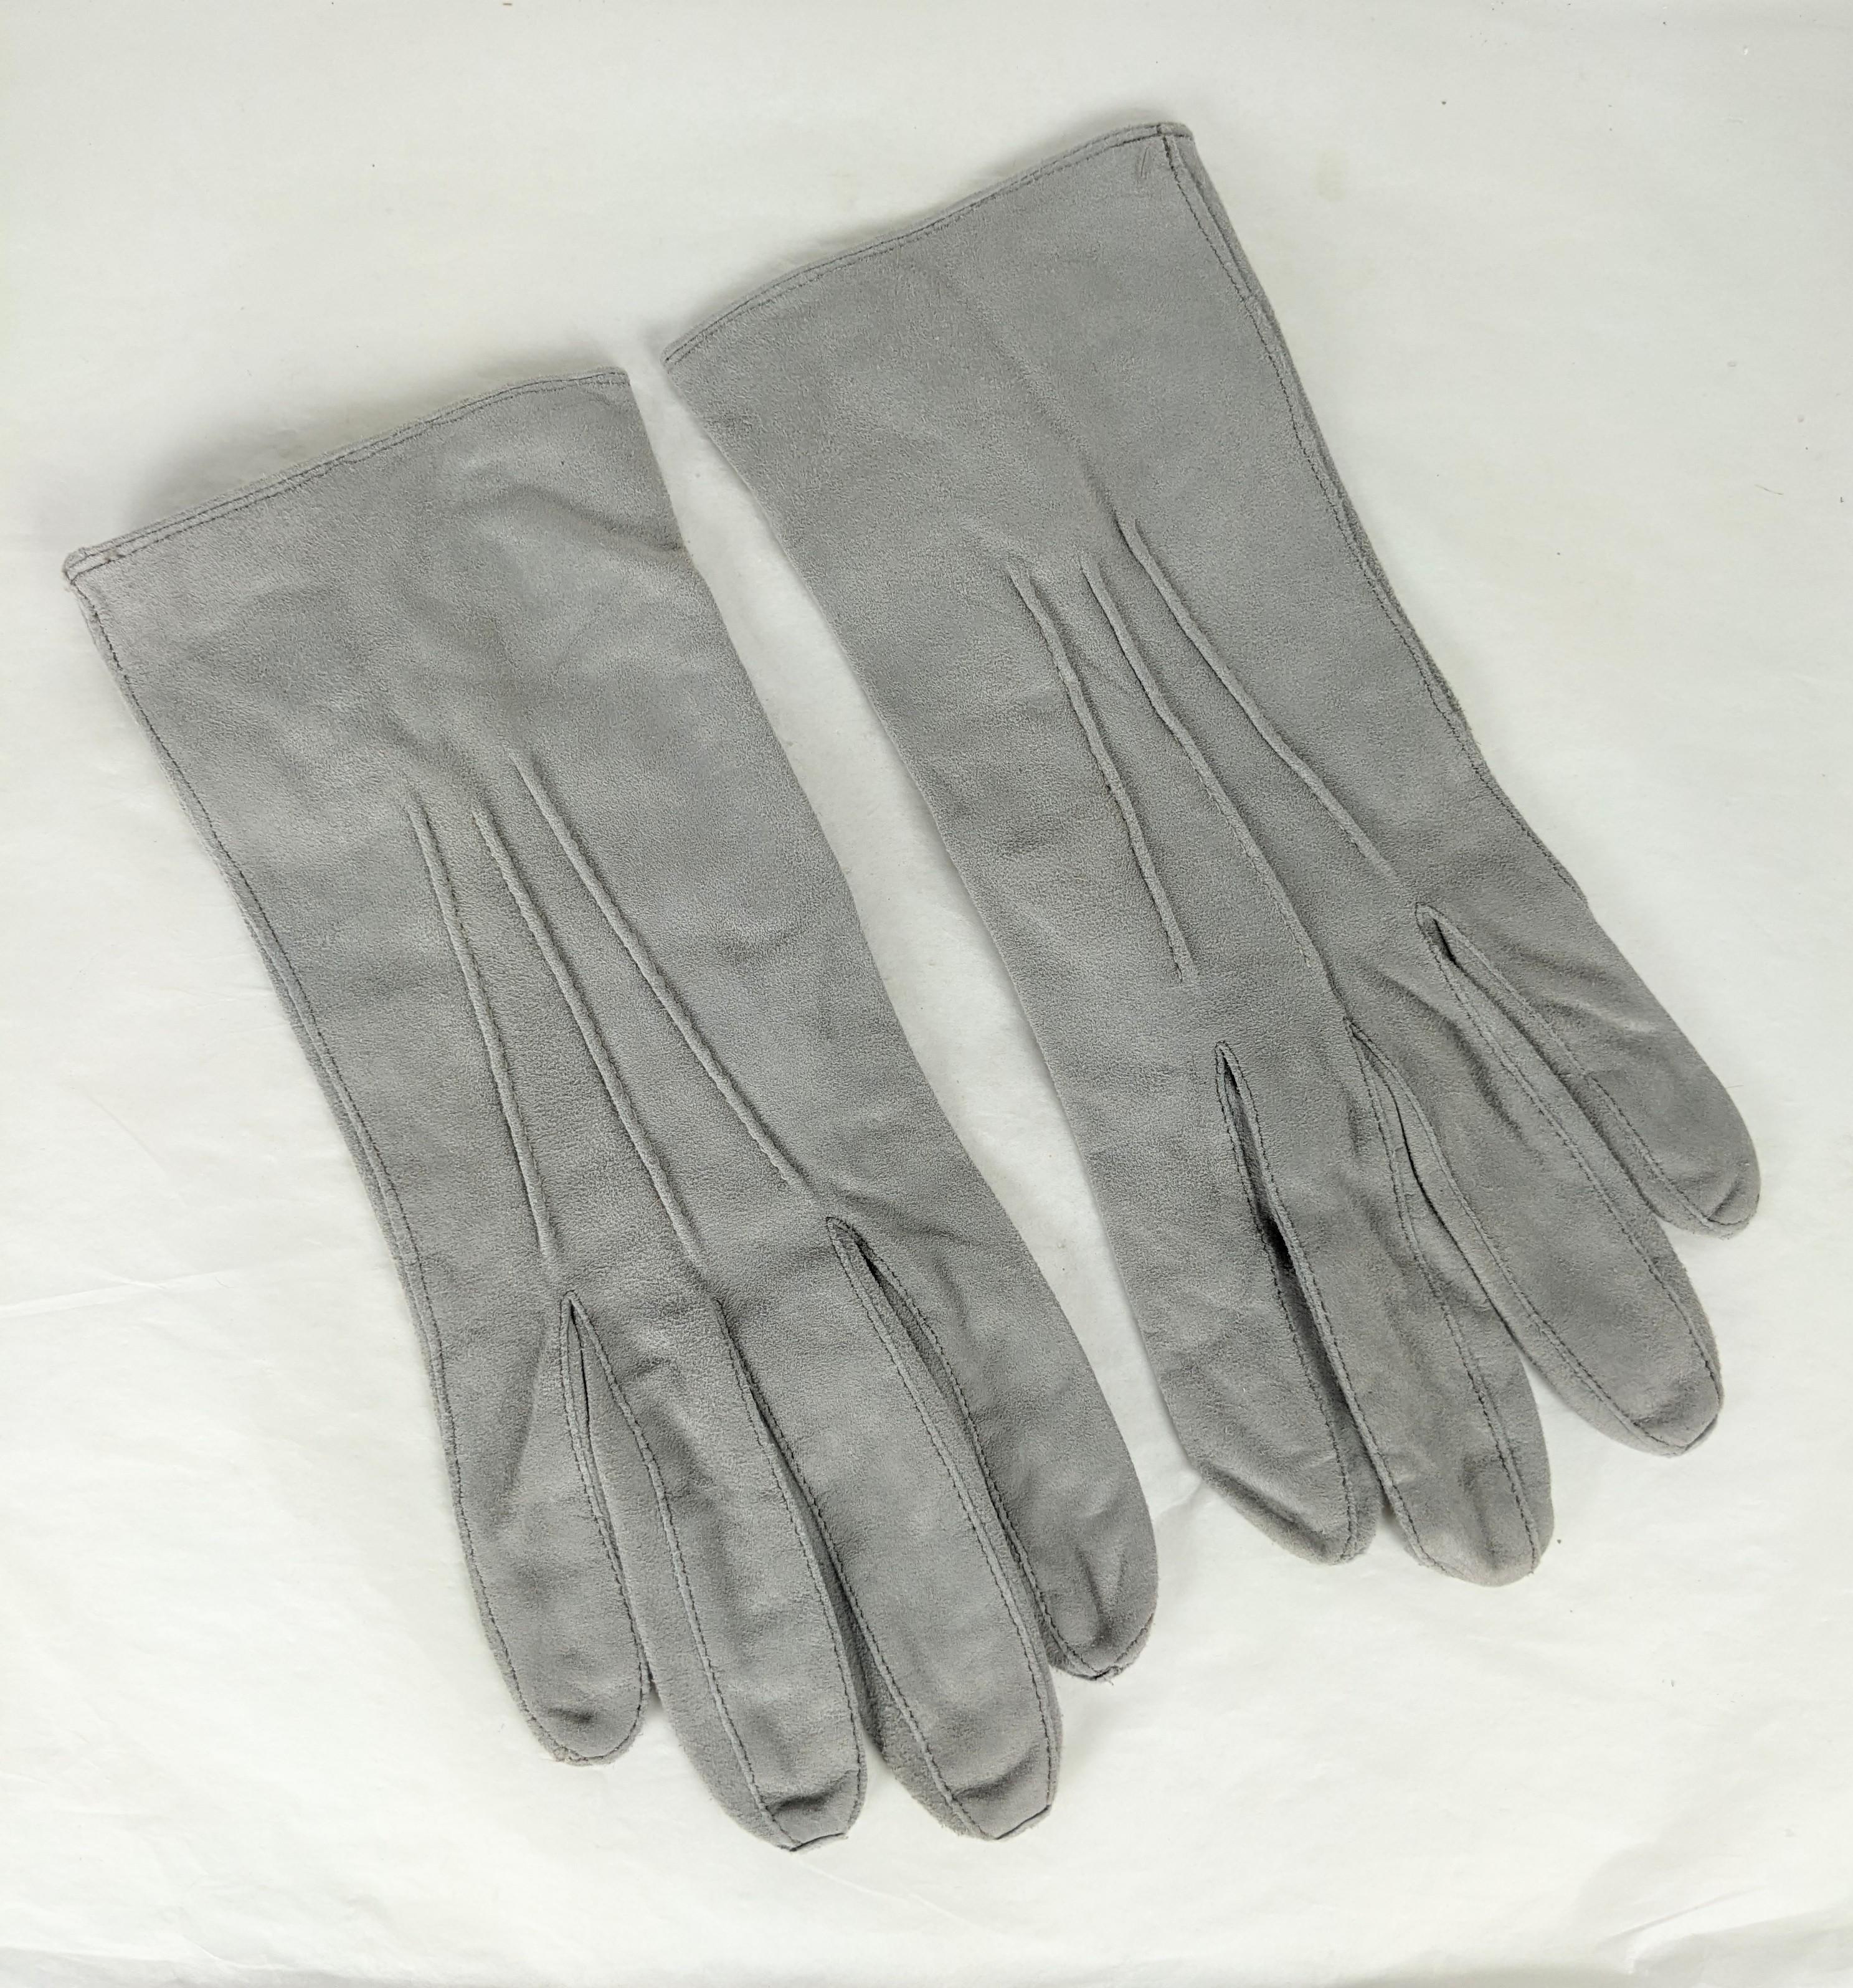 Vintage Brooks Brothers Mens Dove Gray Suede Dress Gloves aus den 1940er Jahren. Größe 8.5 Herren butterweiches Wildleder. Schnappverschlüsse auf der Rückseite. 1940er Jahre USA. 